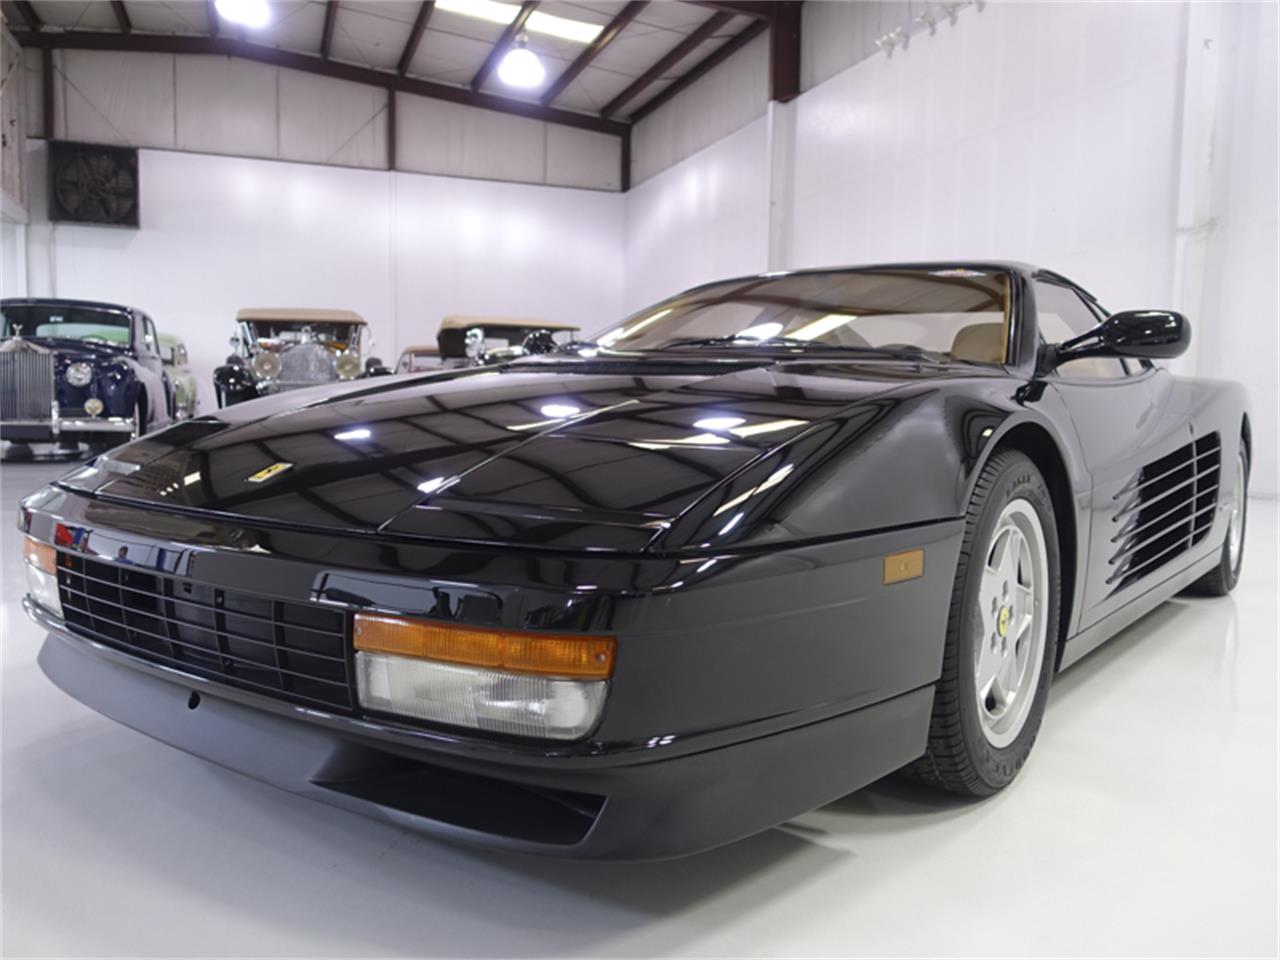 1988 Ferrari Testarossa for sale in St. Louis, MO / ClassicCarsBay.com